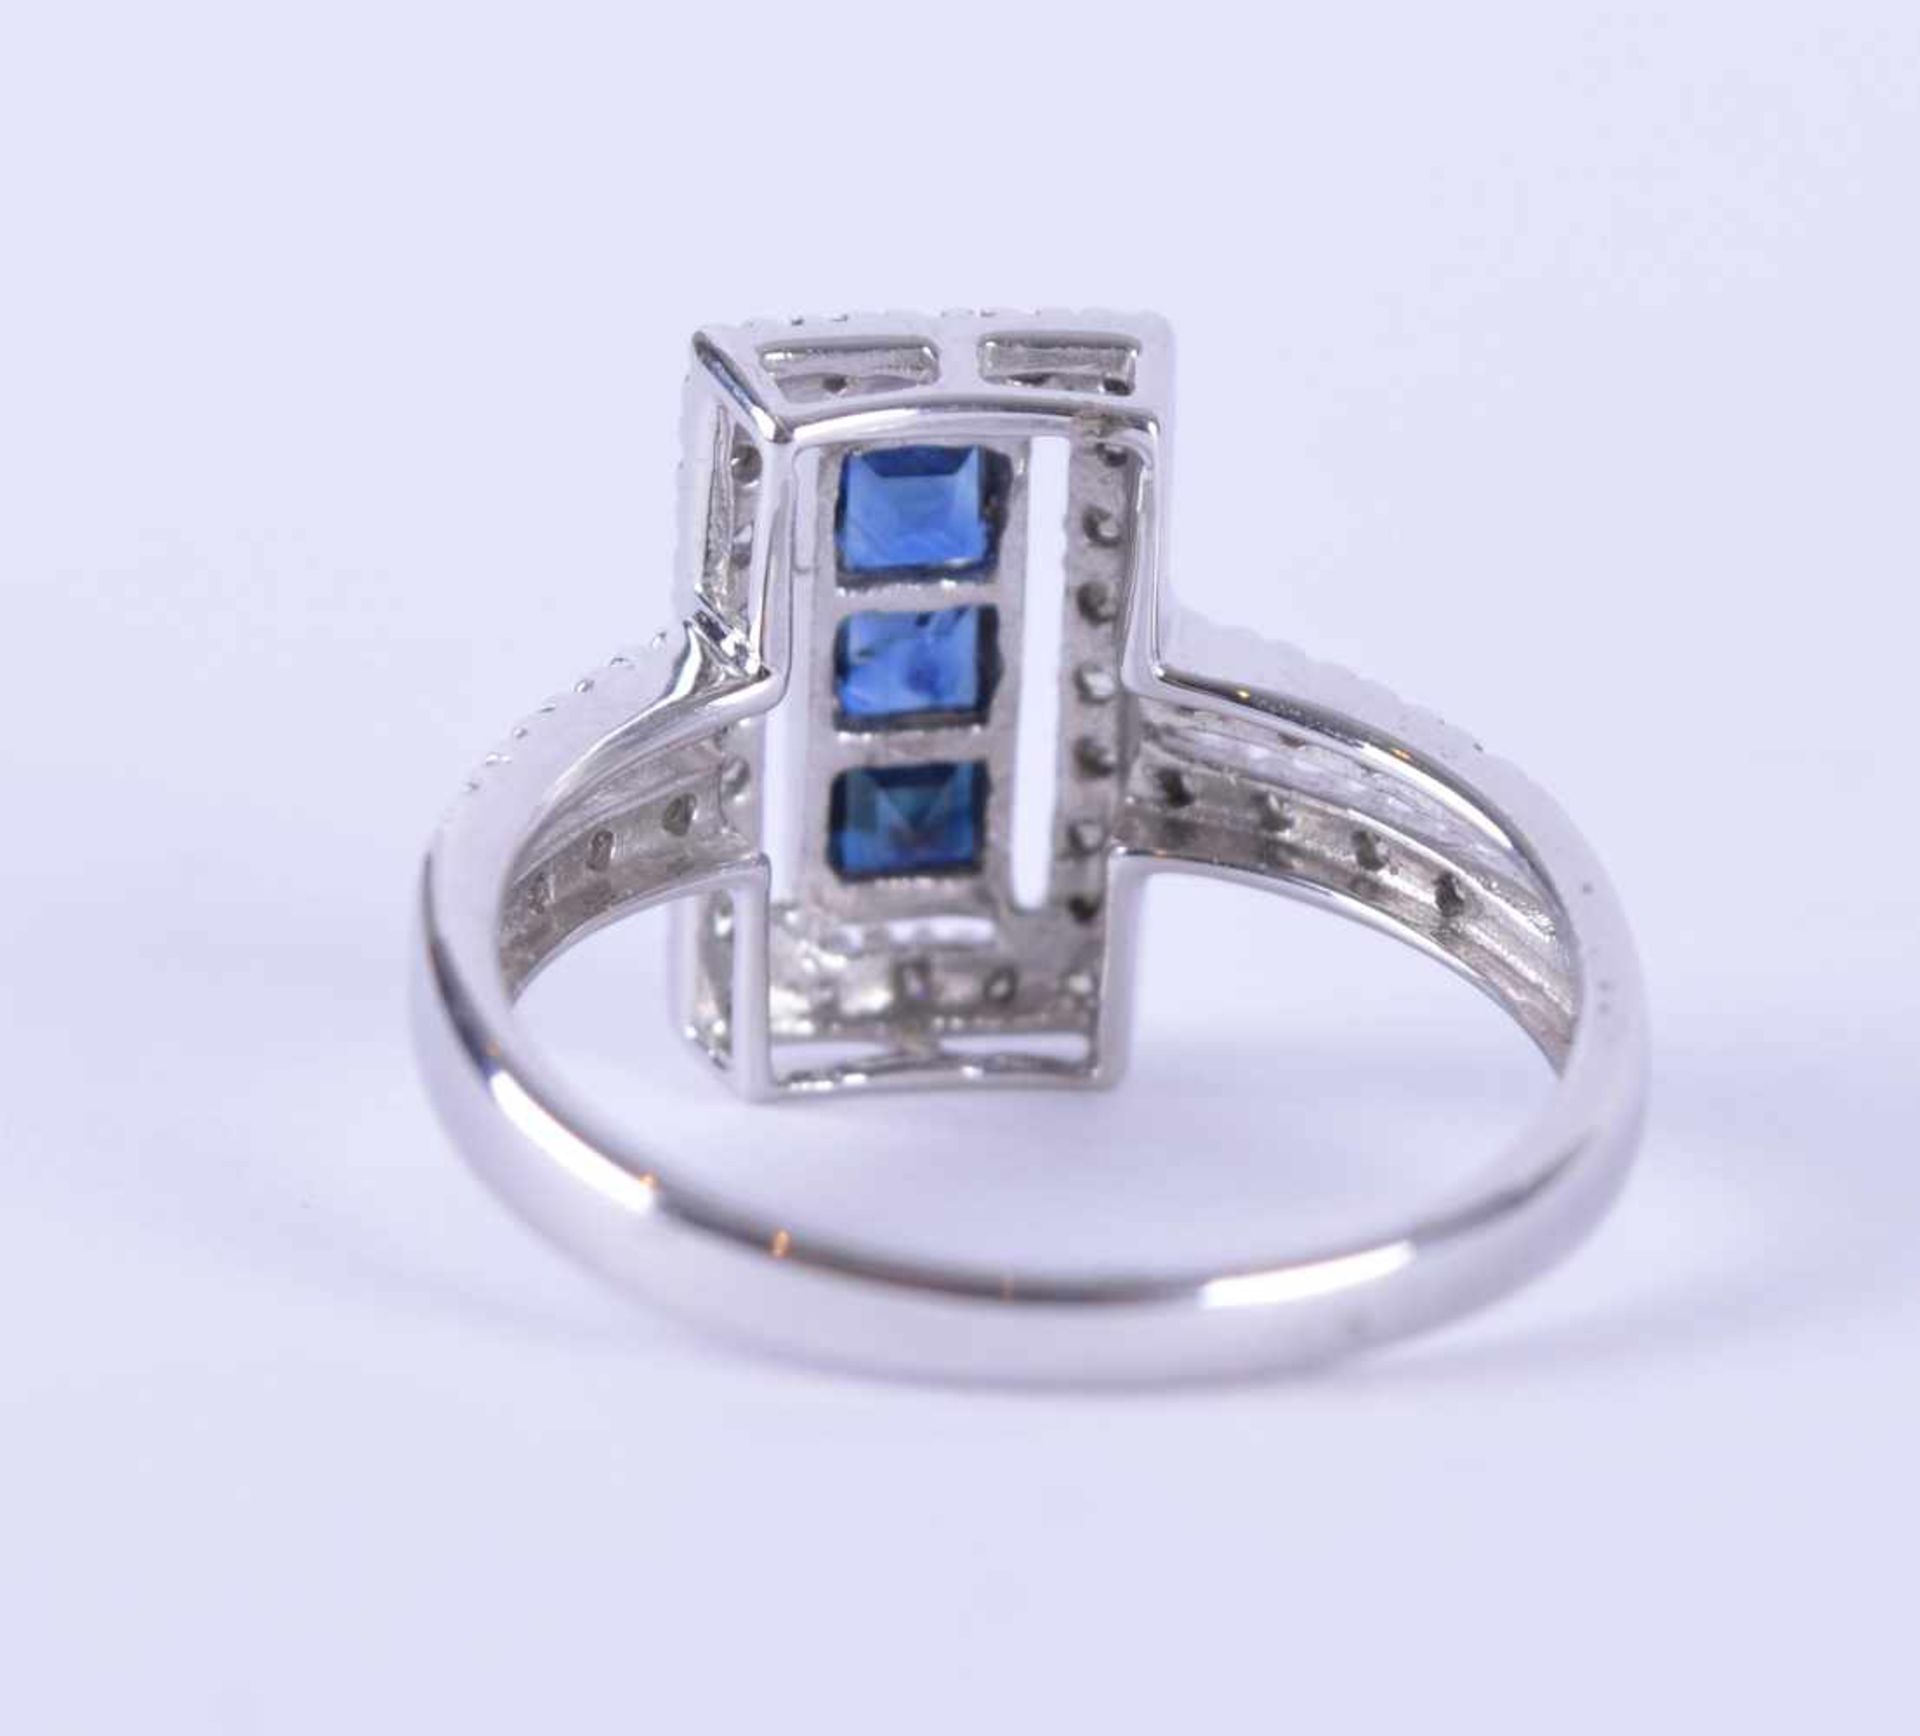 Brillant-Saphirring / Brilliant sapphire ringWG 585/000, Diamanten zusammen 0,20 ct, Saphir 0,50 ct, - Bild 3 aus 5